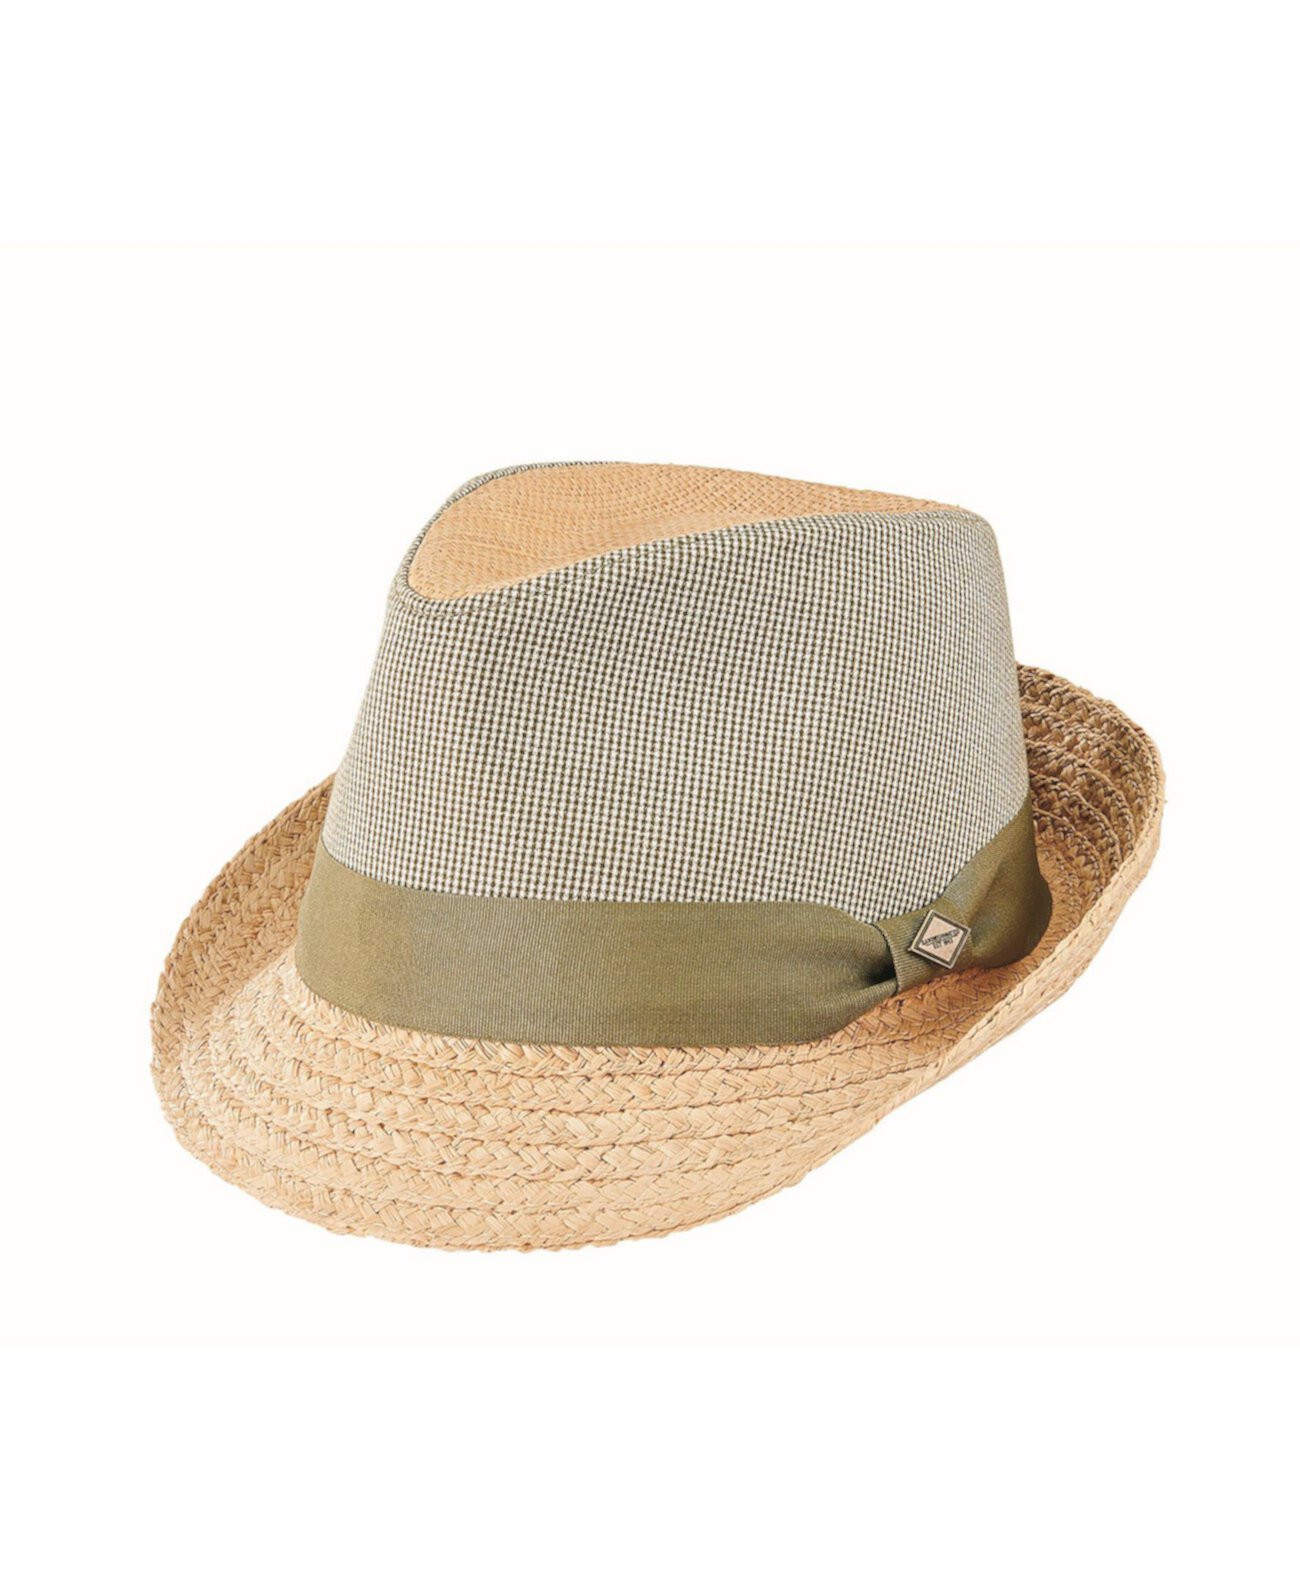 Мужская шляпа Fedora с аппликацией из пшеничной соломы и хлопковой ткани San Diego Hat Company